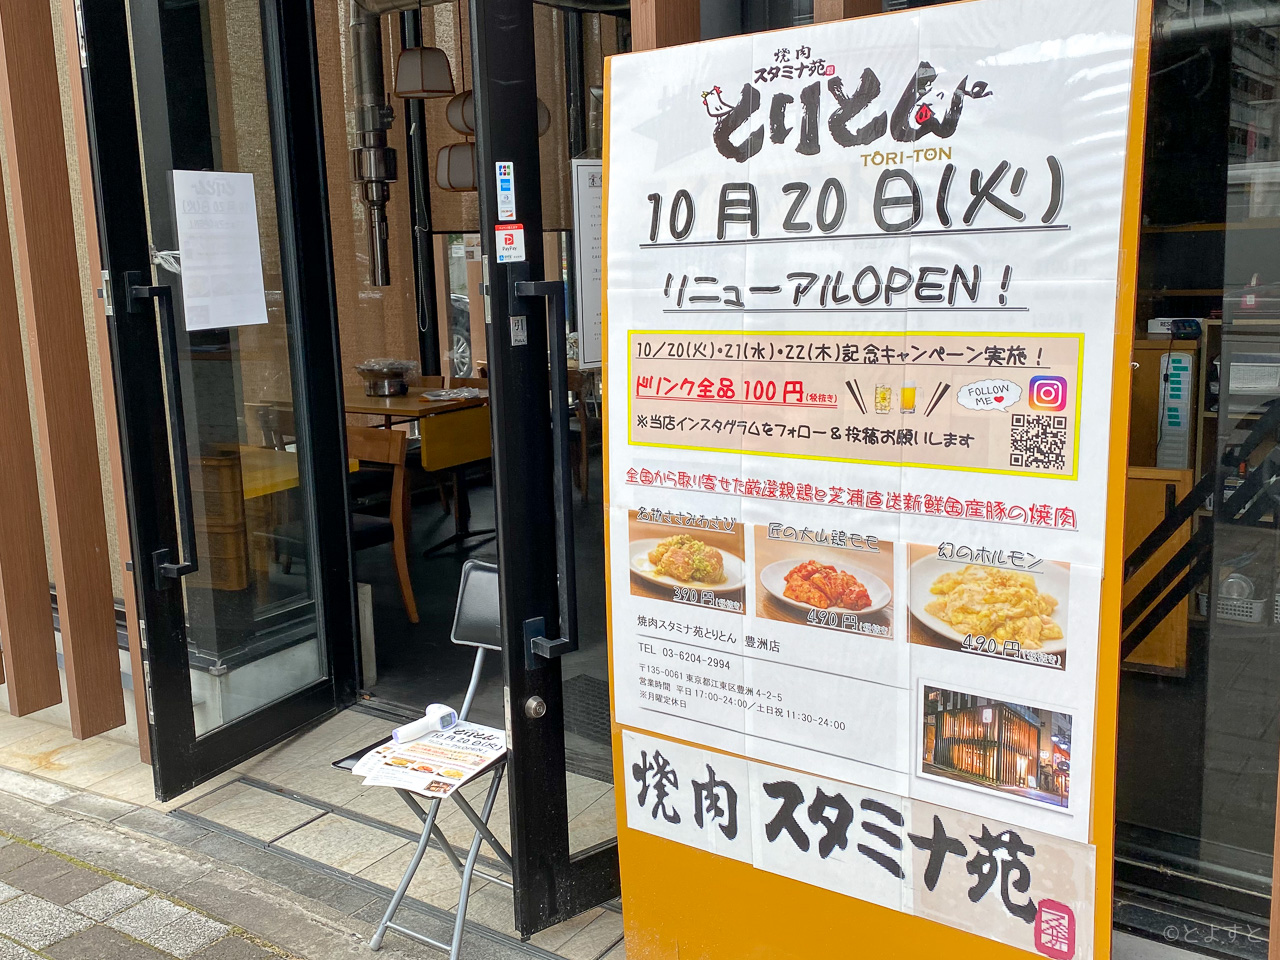 豊洲「東京牛串 千本」が閉店し、「焼肉スタミナ苑 とりとん 豊洲店」が10/20オープンへ